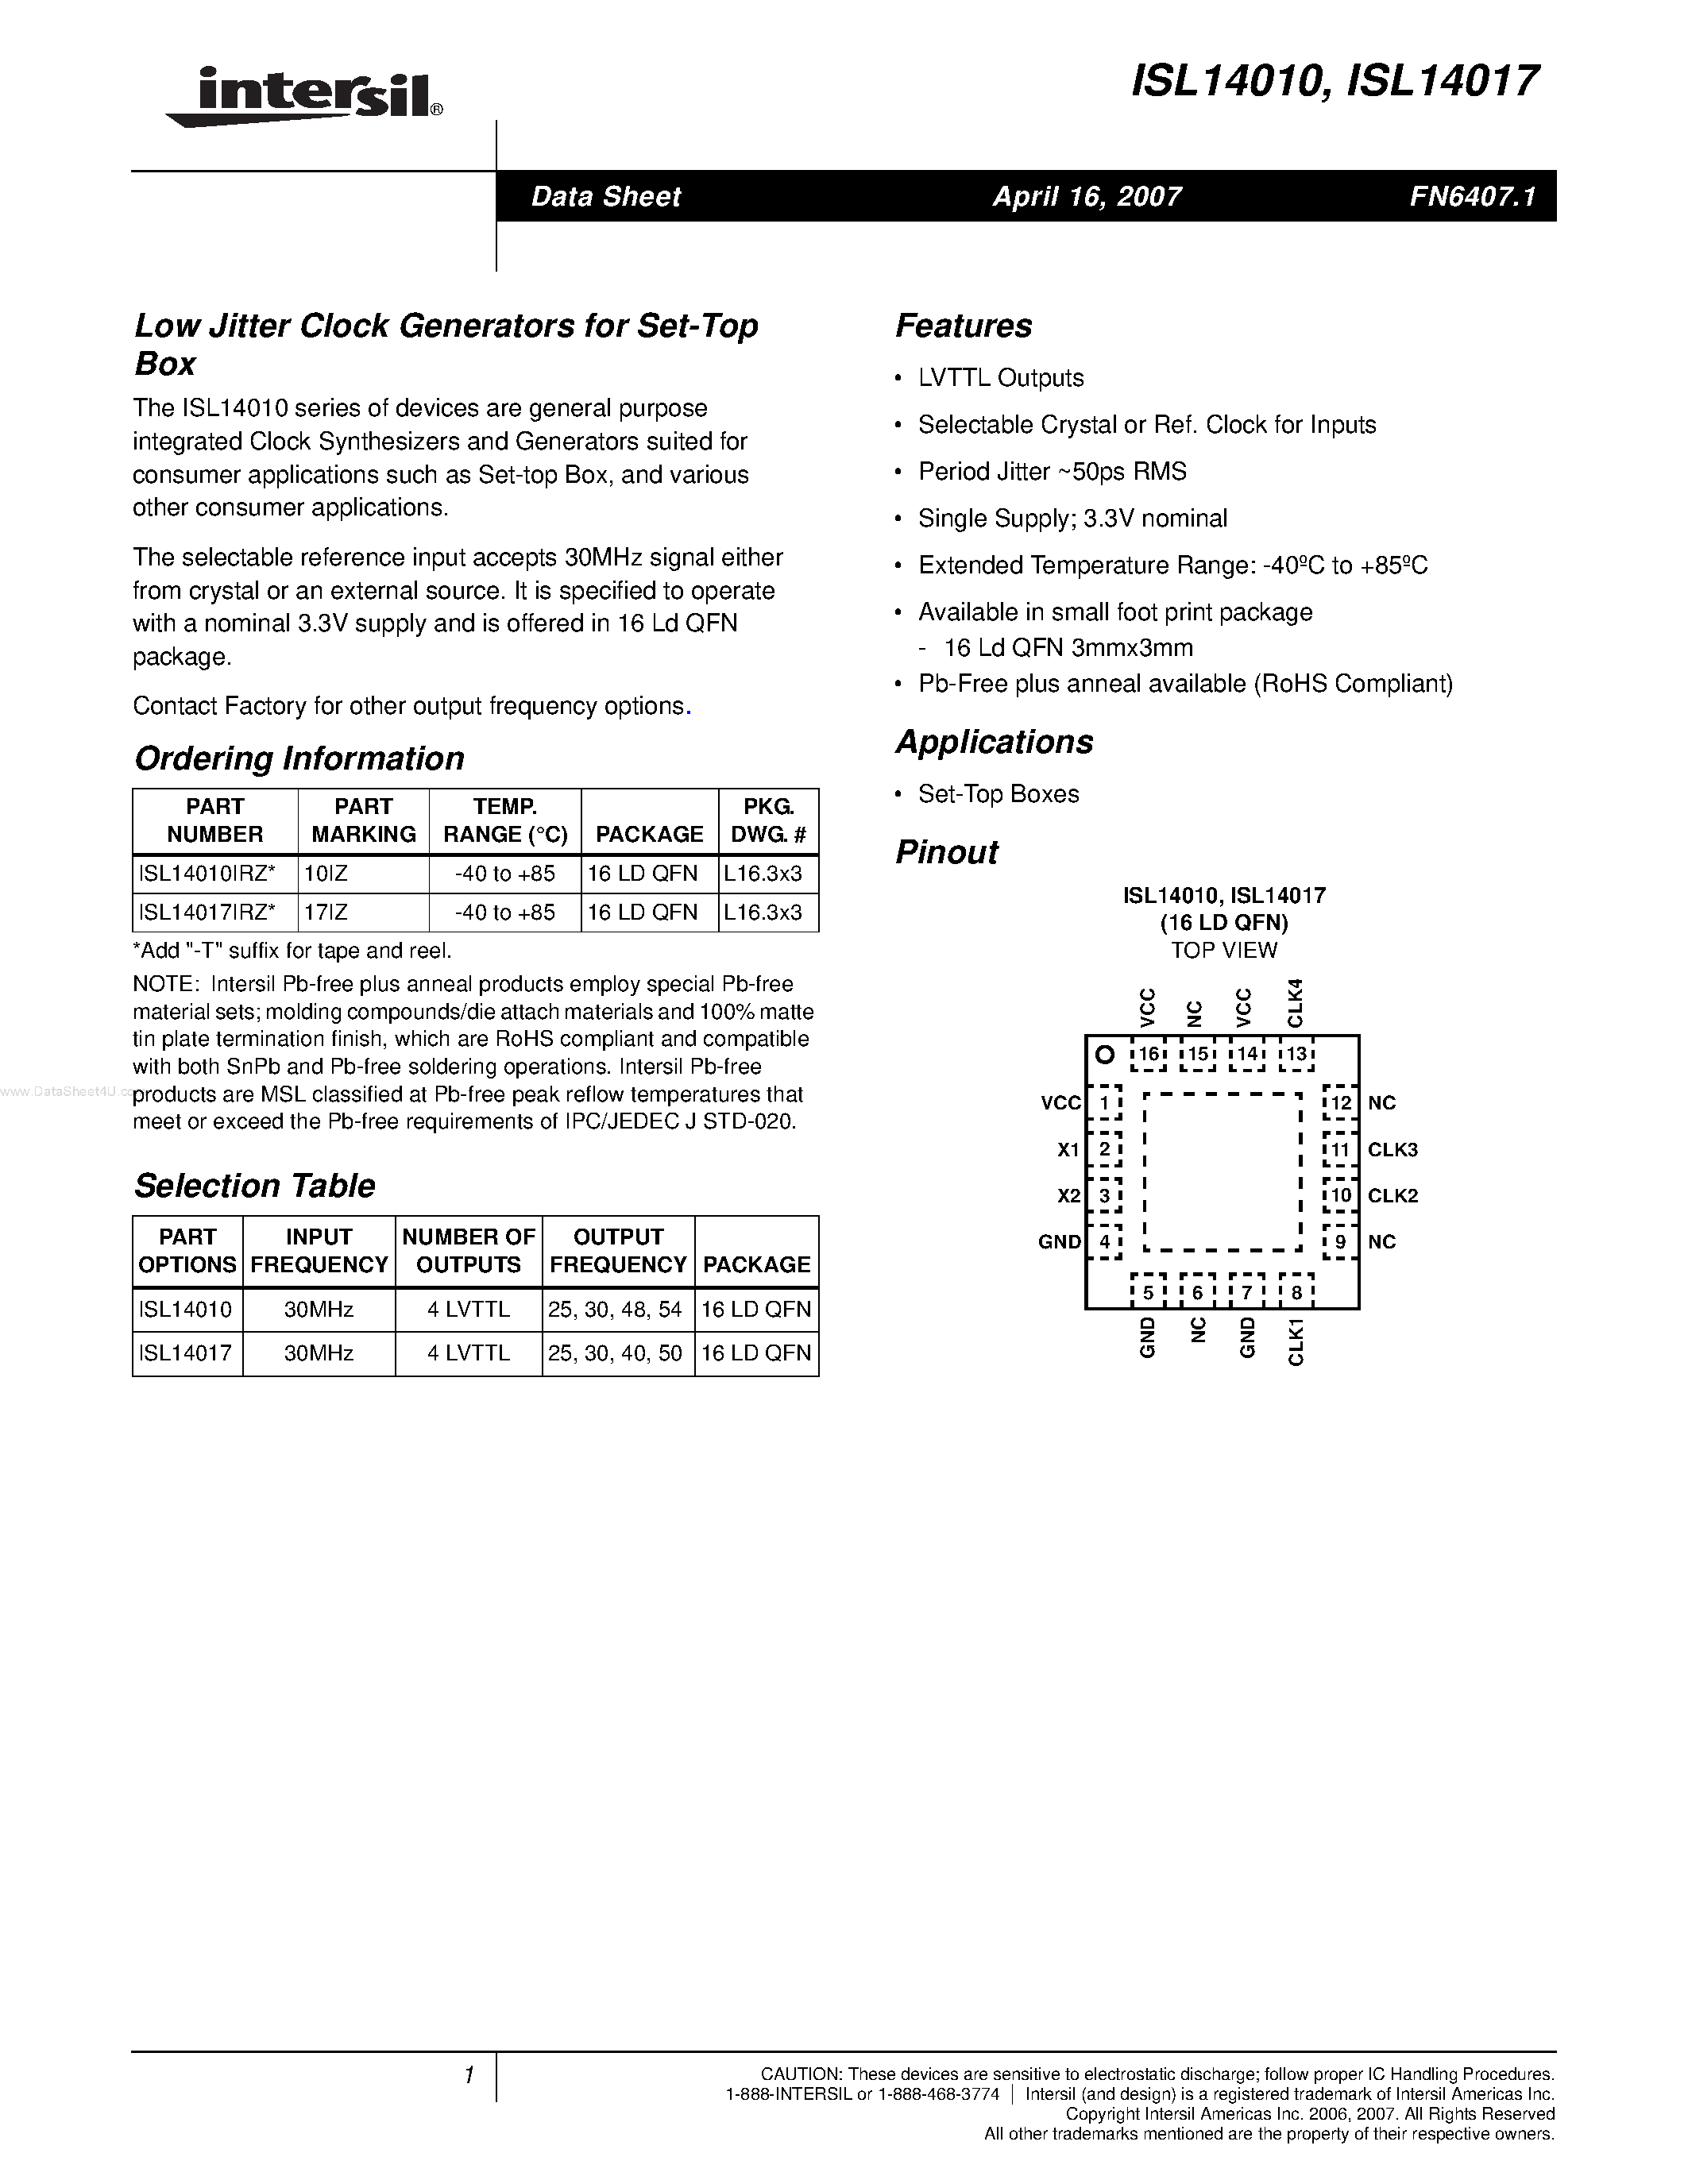 Даташит ISL14010 - (ISL14010 / ISL14017) Low Jitter Clock Generators страница 1